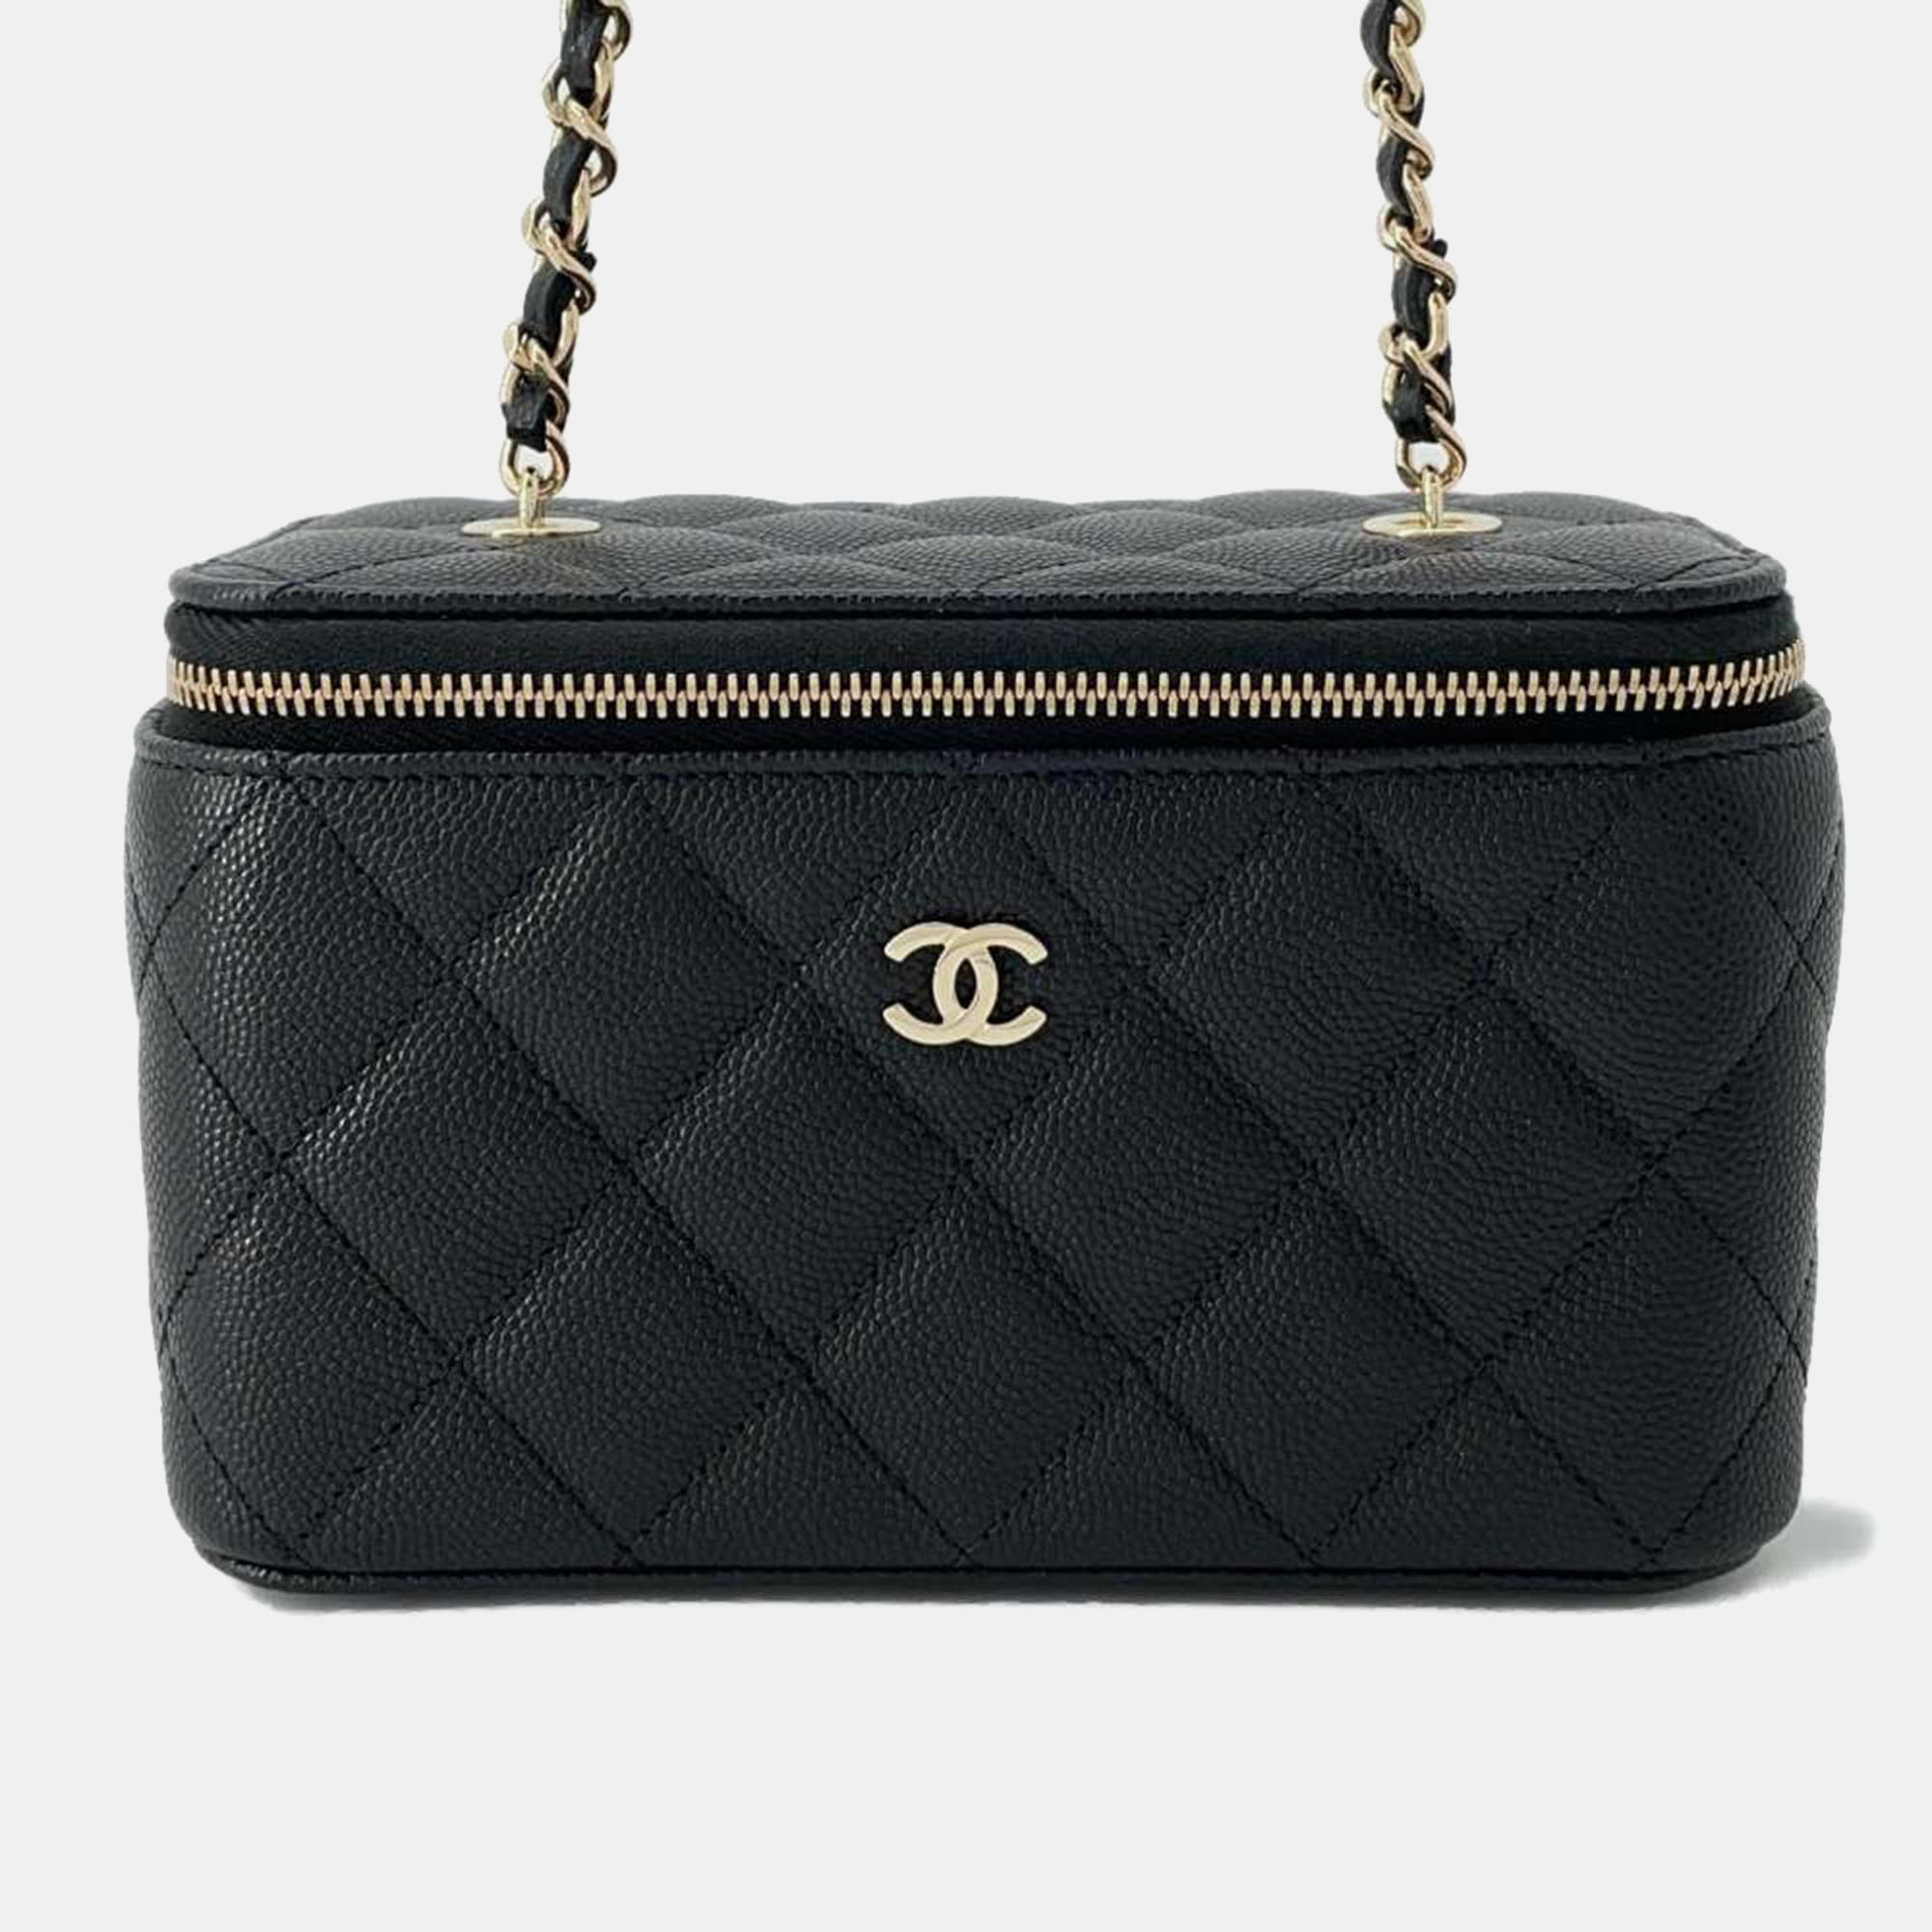 Chanel black caviar leather vanity case shoulder bag